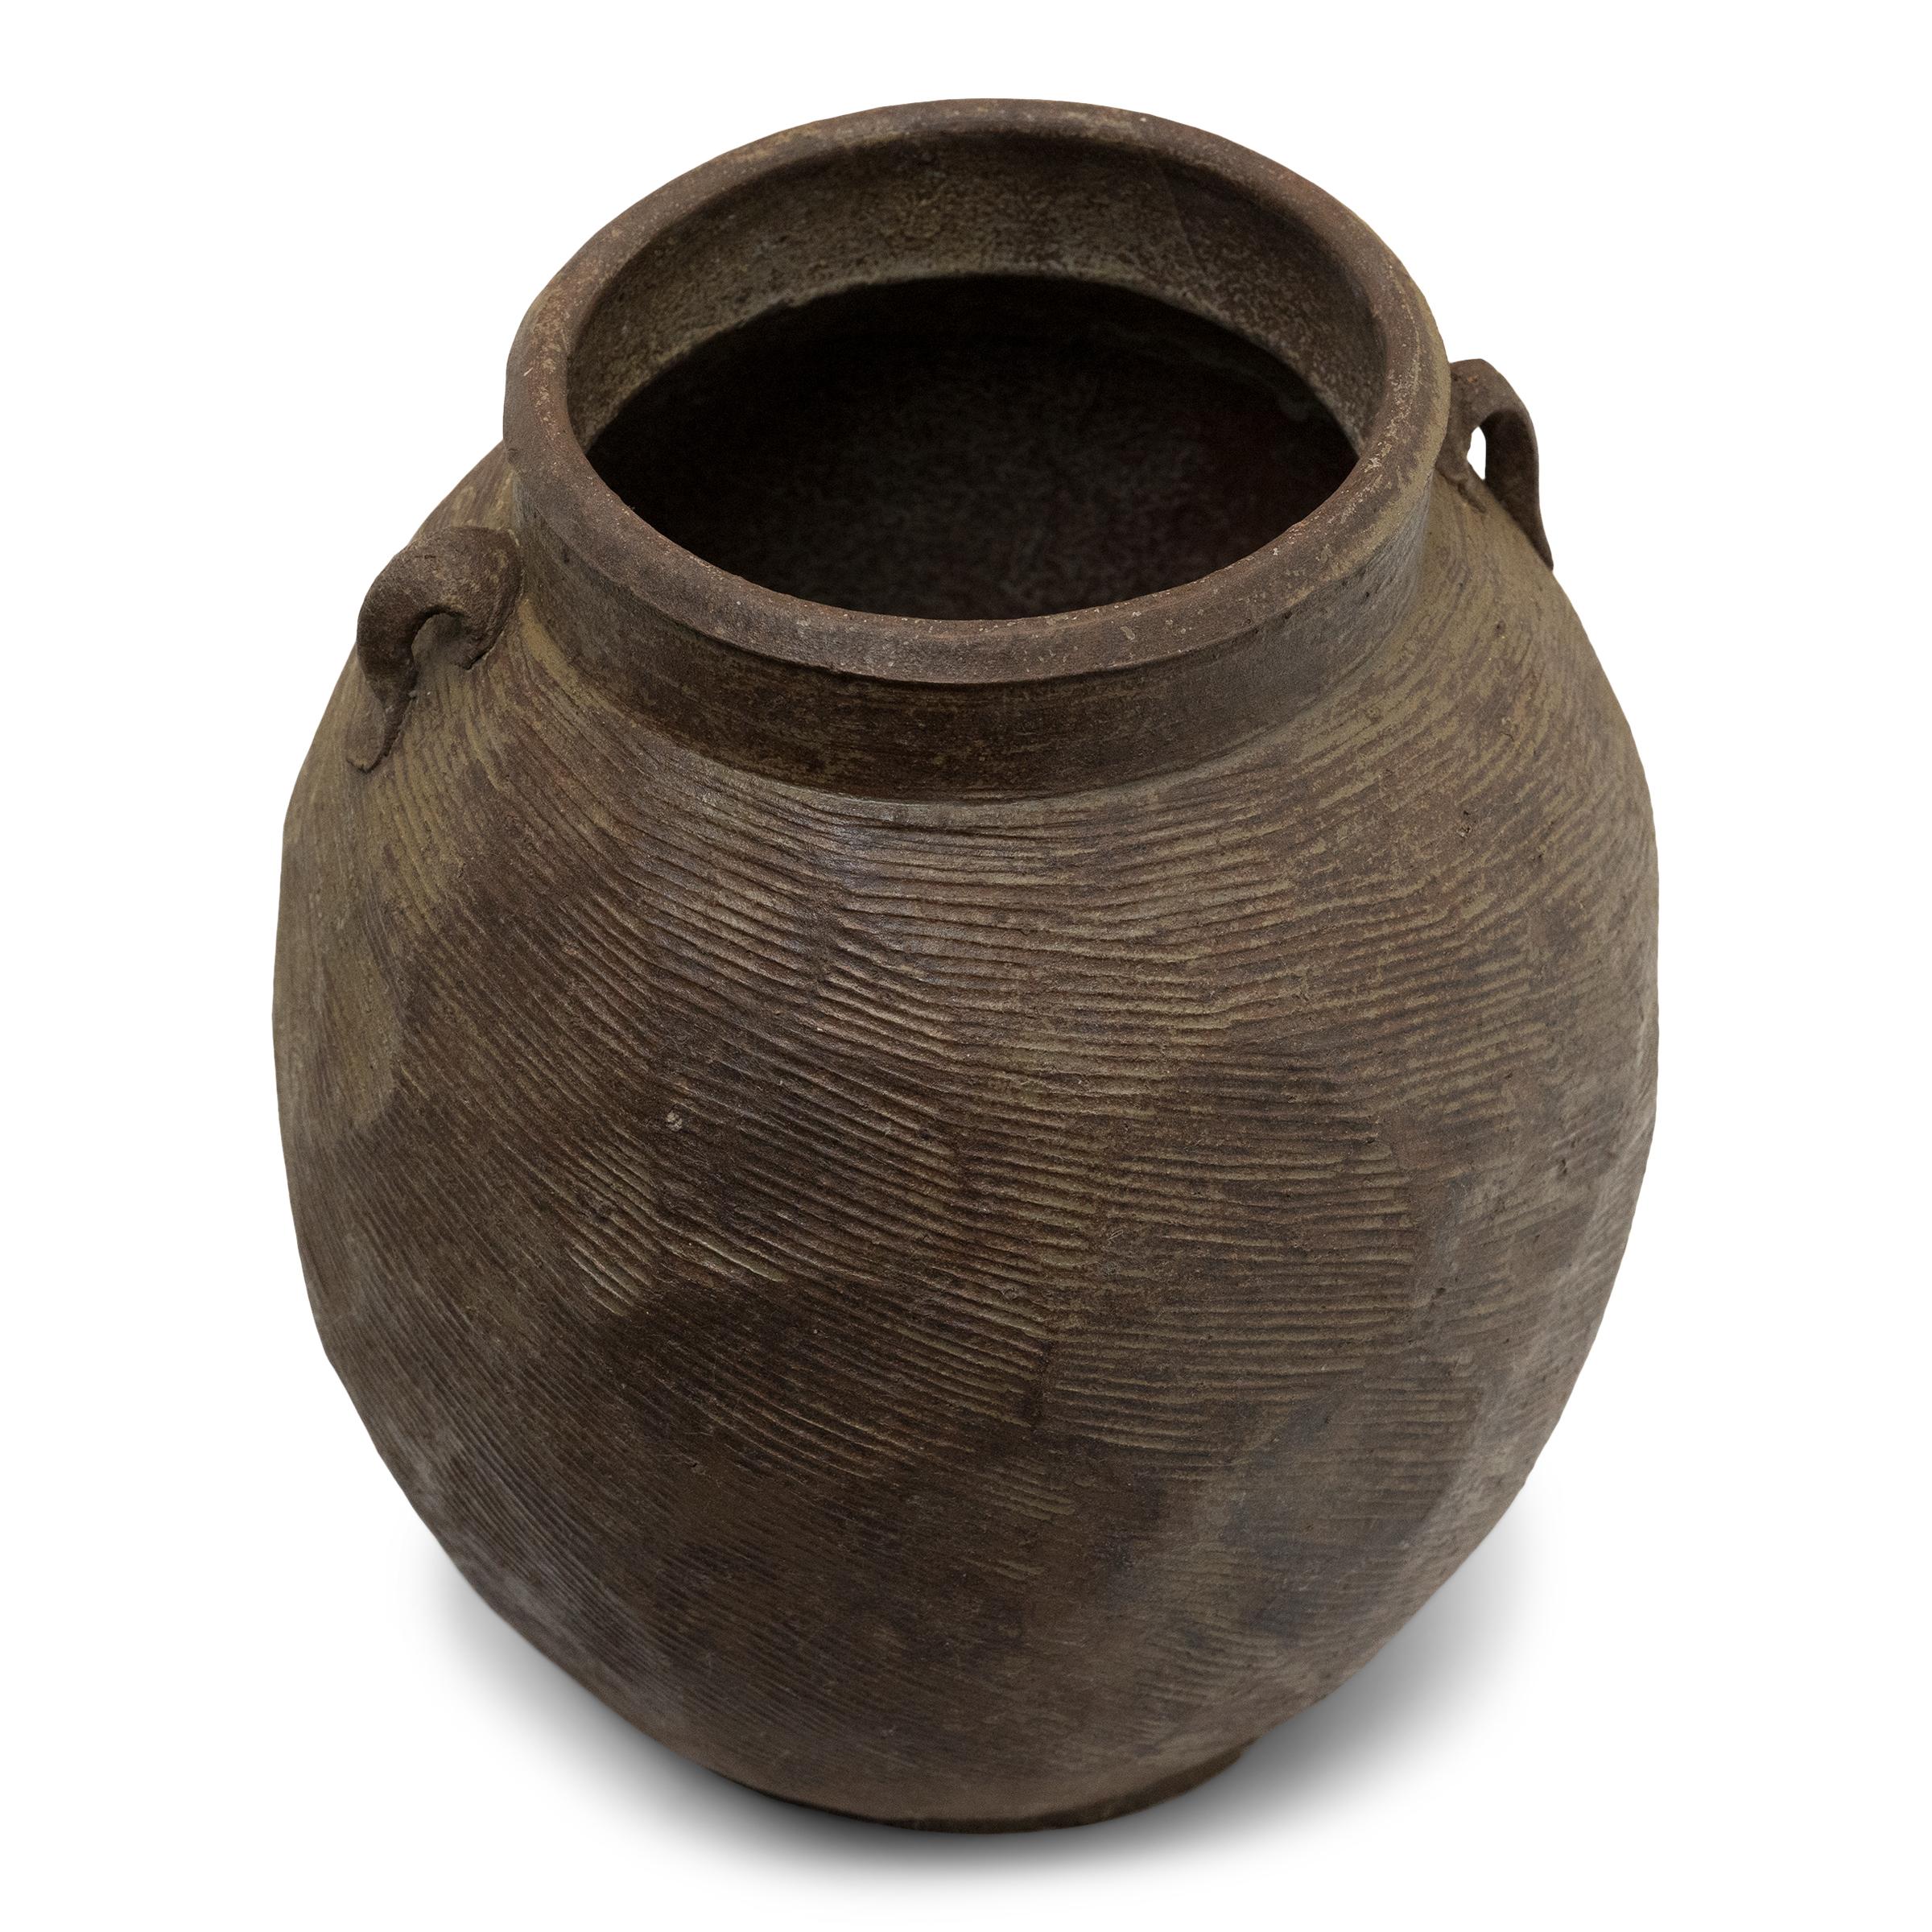 Qing Chinese Yunnan Lobed Pot, c. 1800